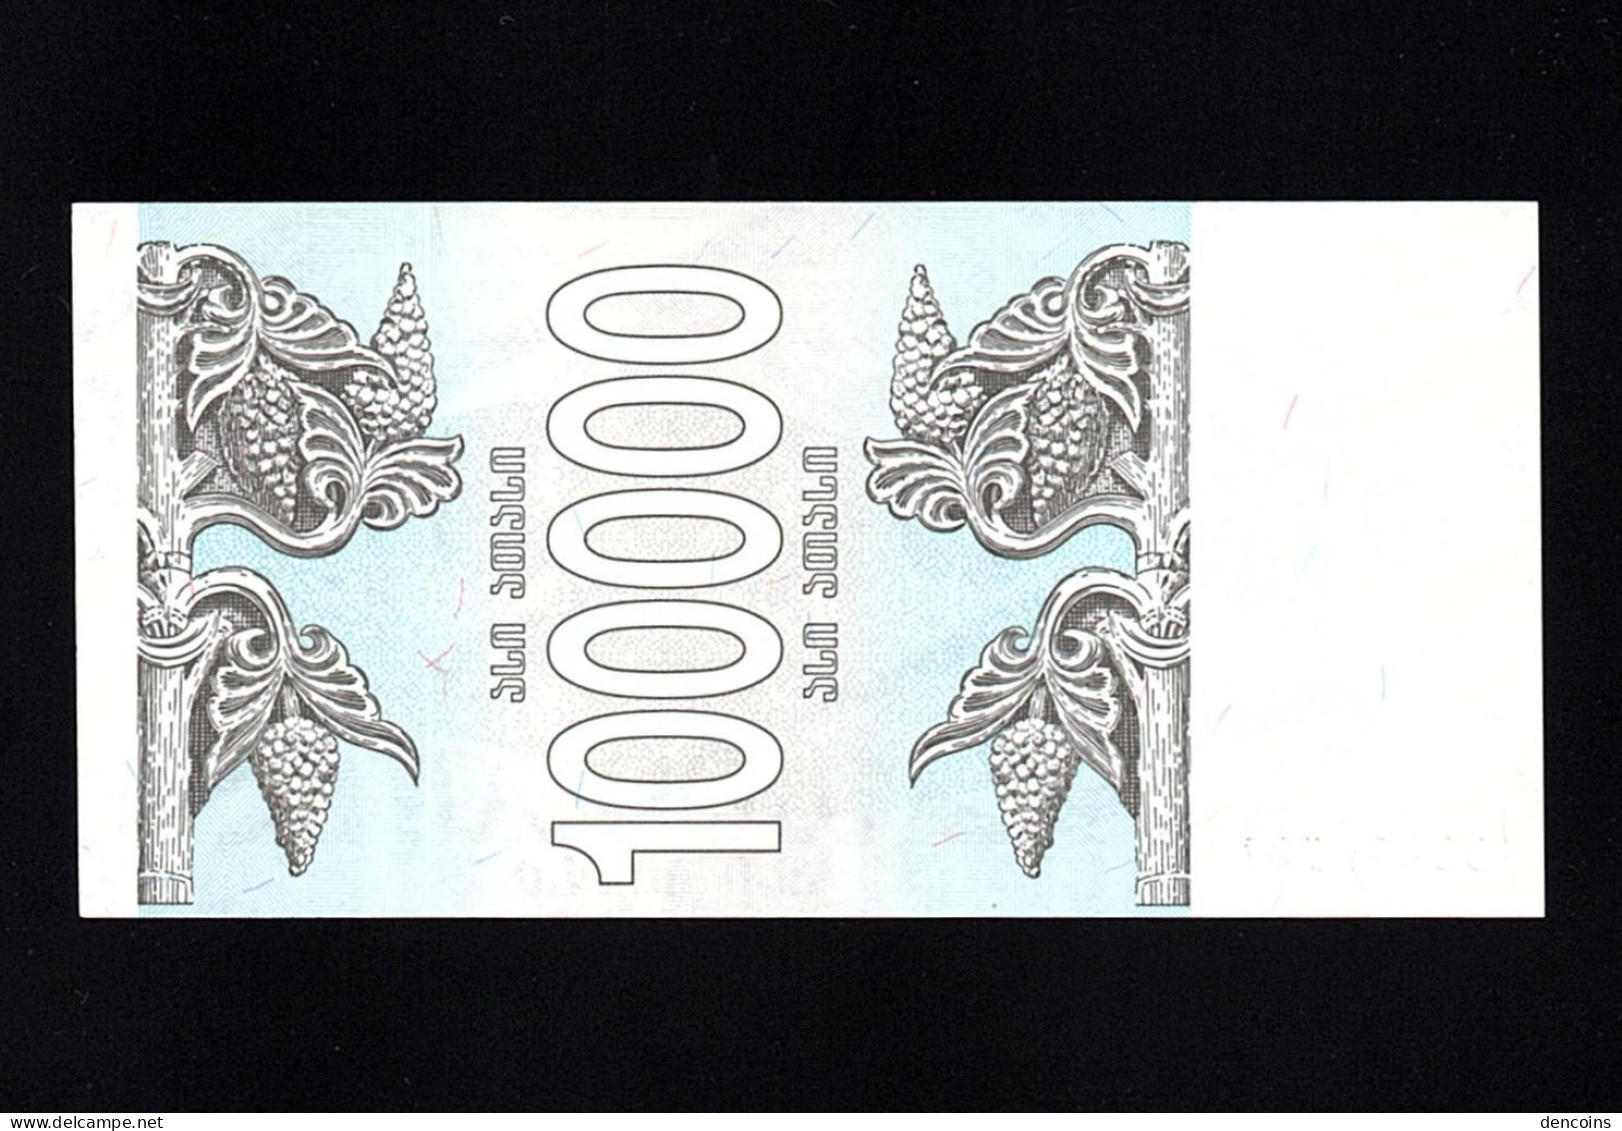 GEORGIA  P-48Aa  100000 KUPONI  1994  UNC   NEUF   SIN CIRCULAR - Georgien